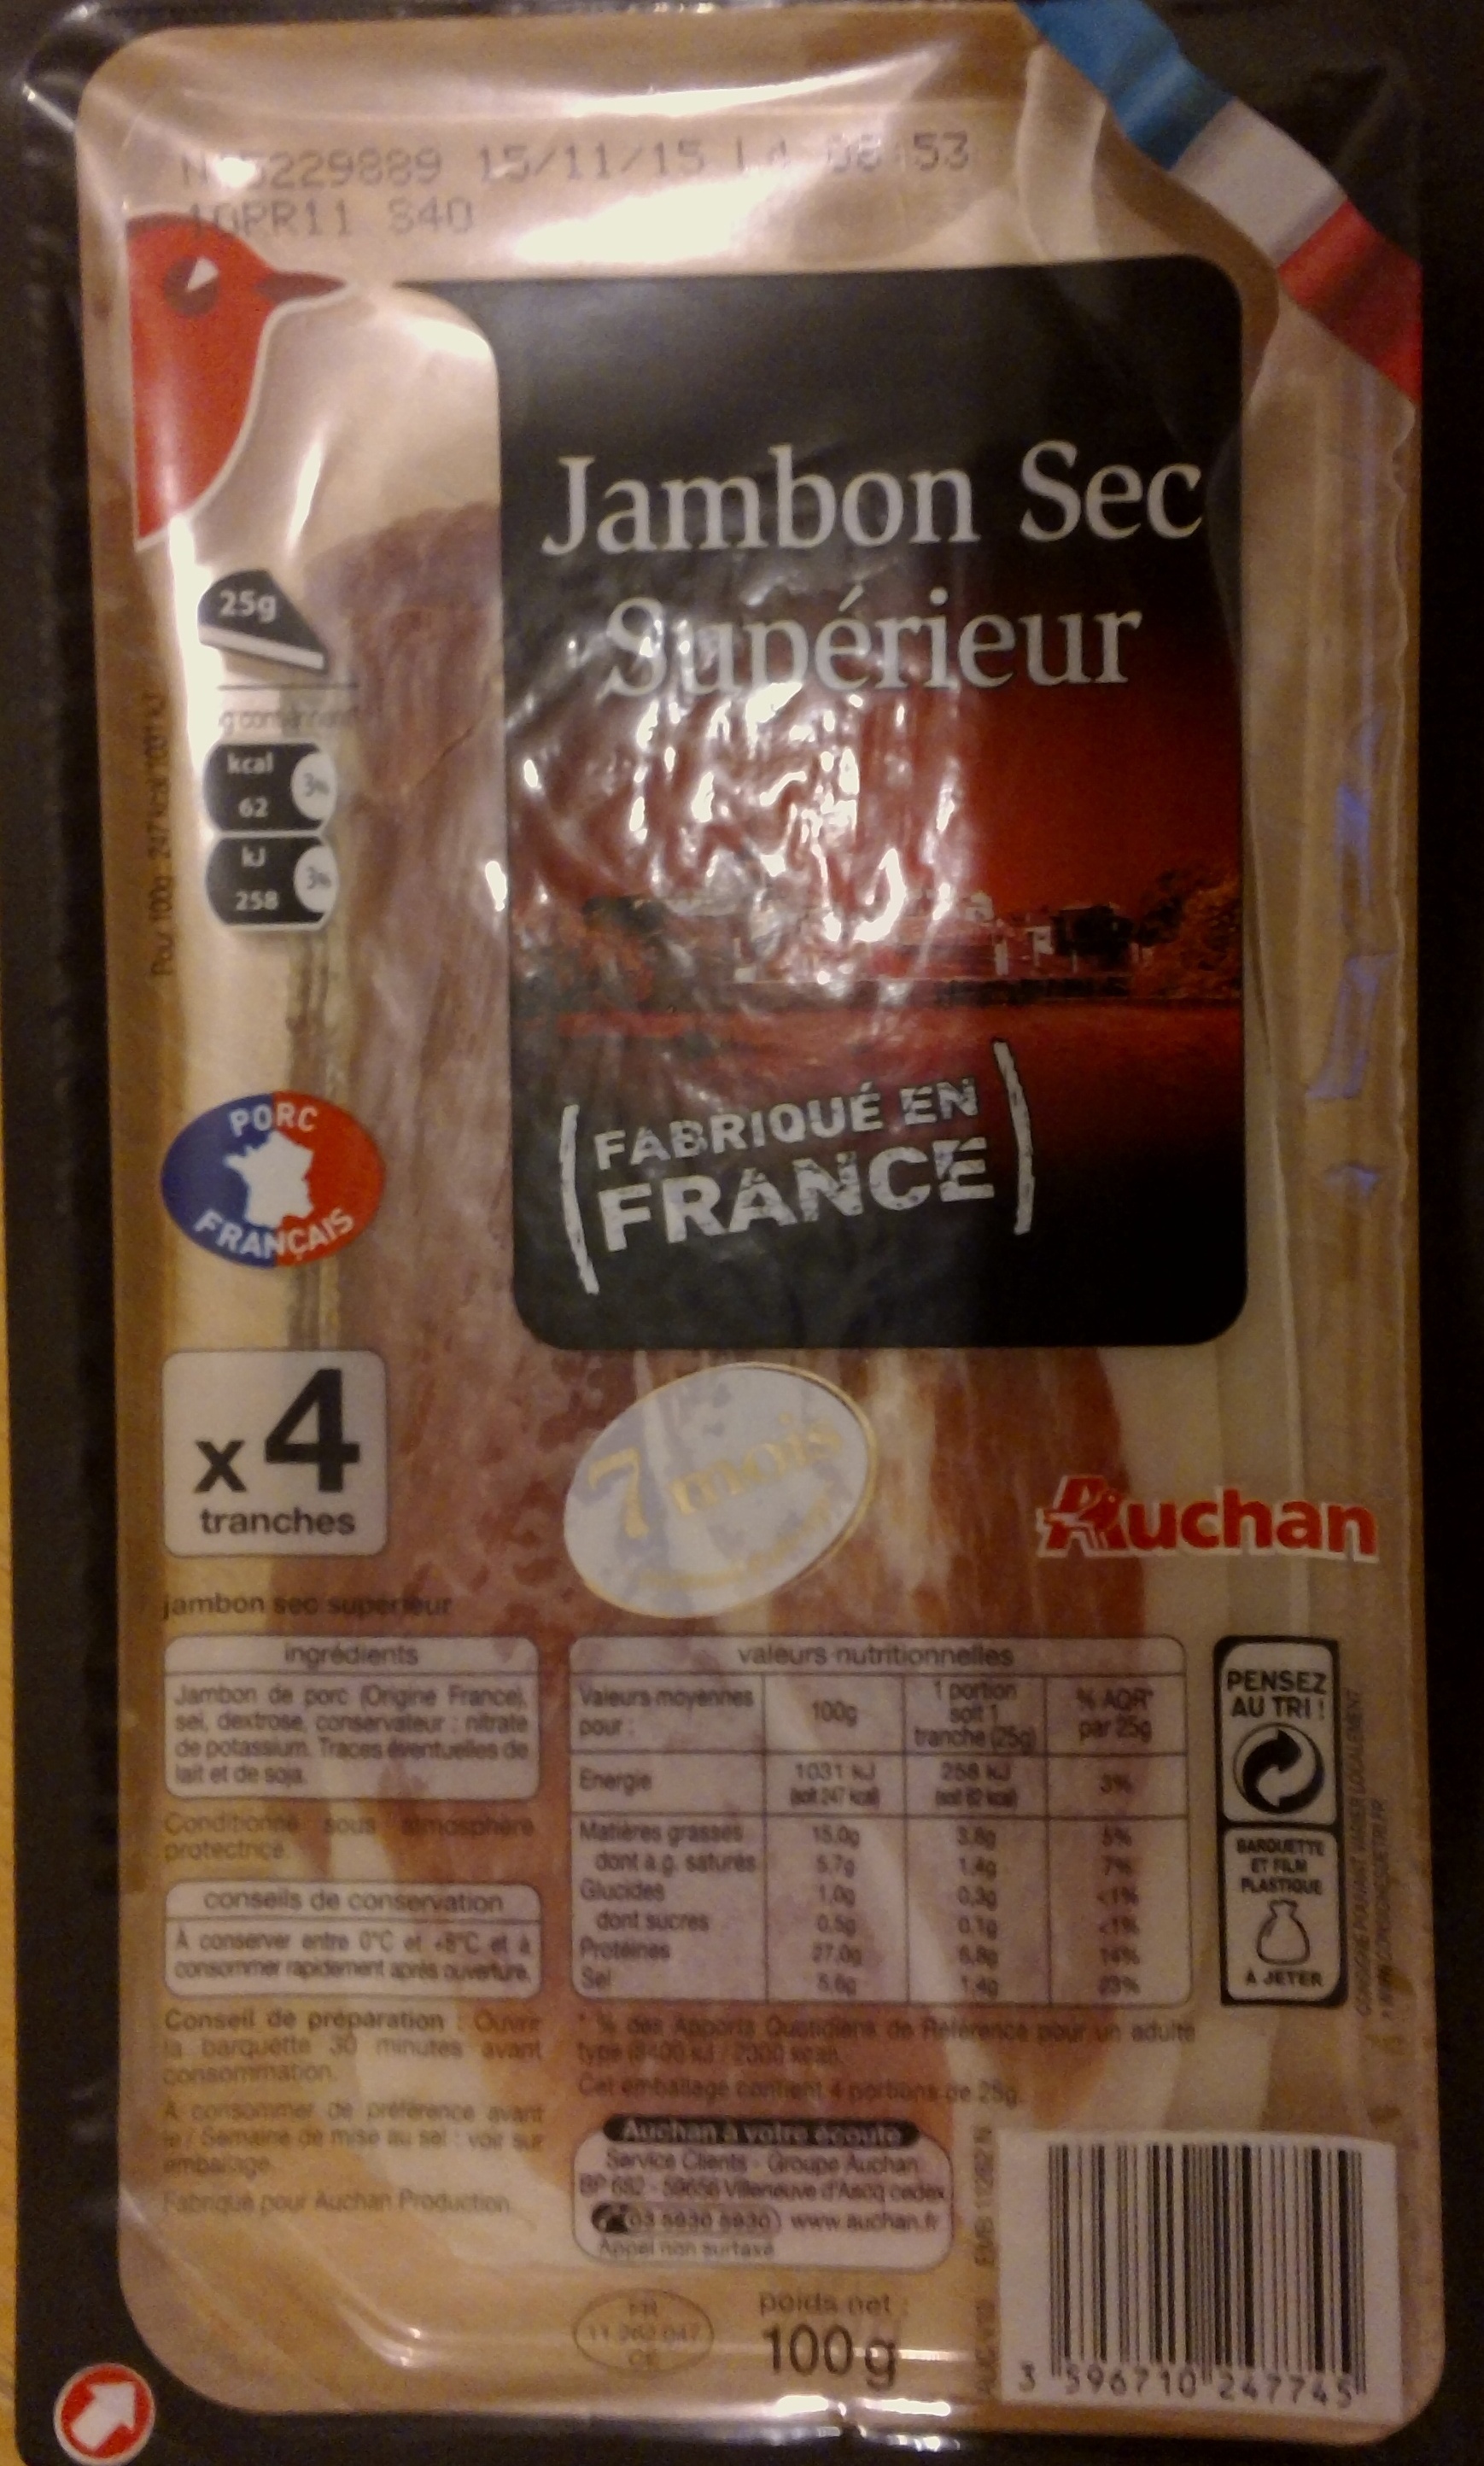 Jambon Sec Supérieur (Fabriqué en France) - Produkt - fr